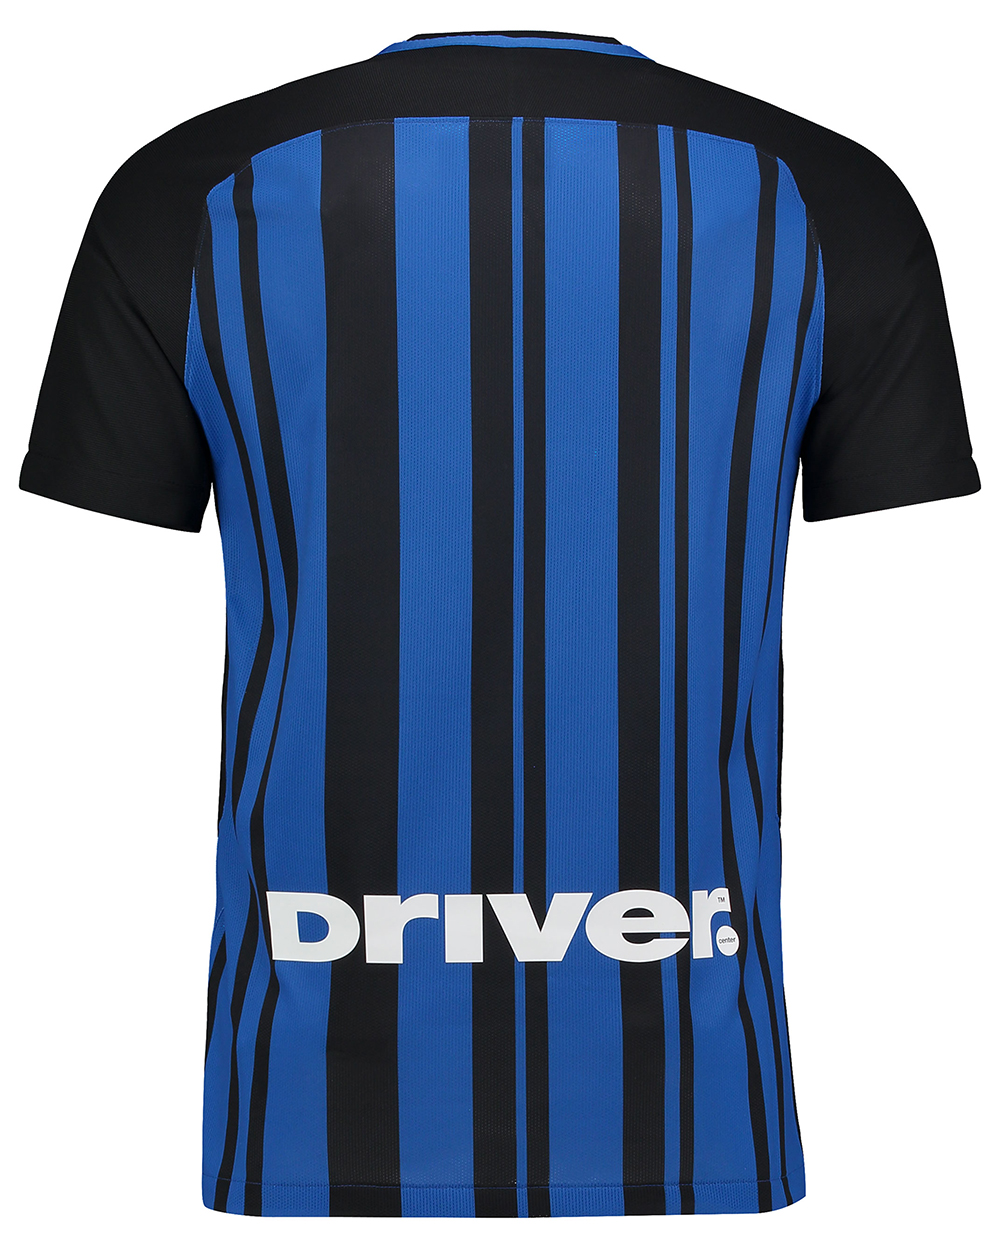 Inter Milan Nike Home Kit 2017 18